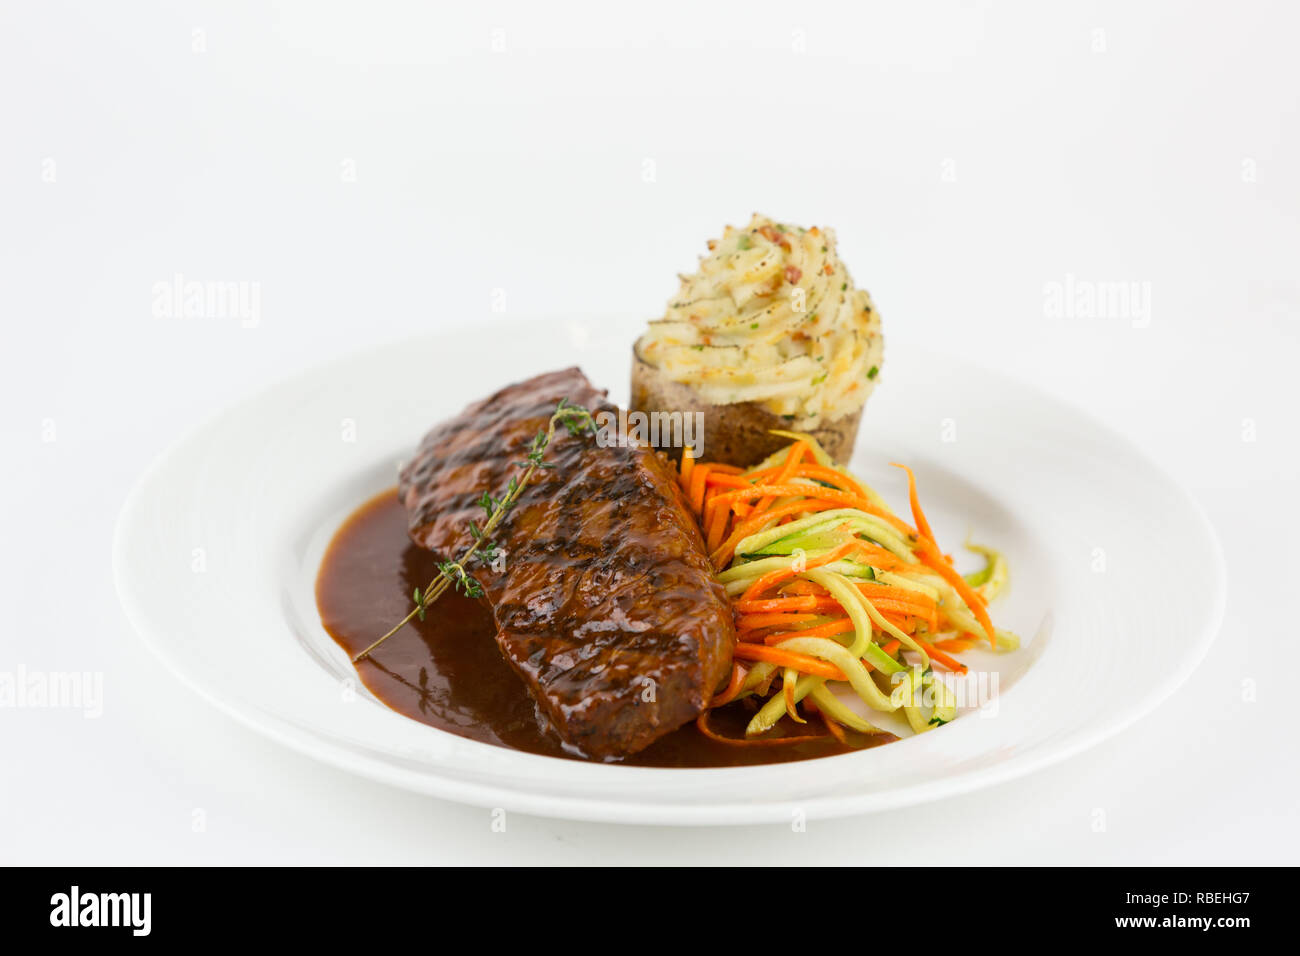 Plated steak dinner Stock Photo